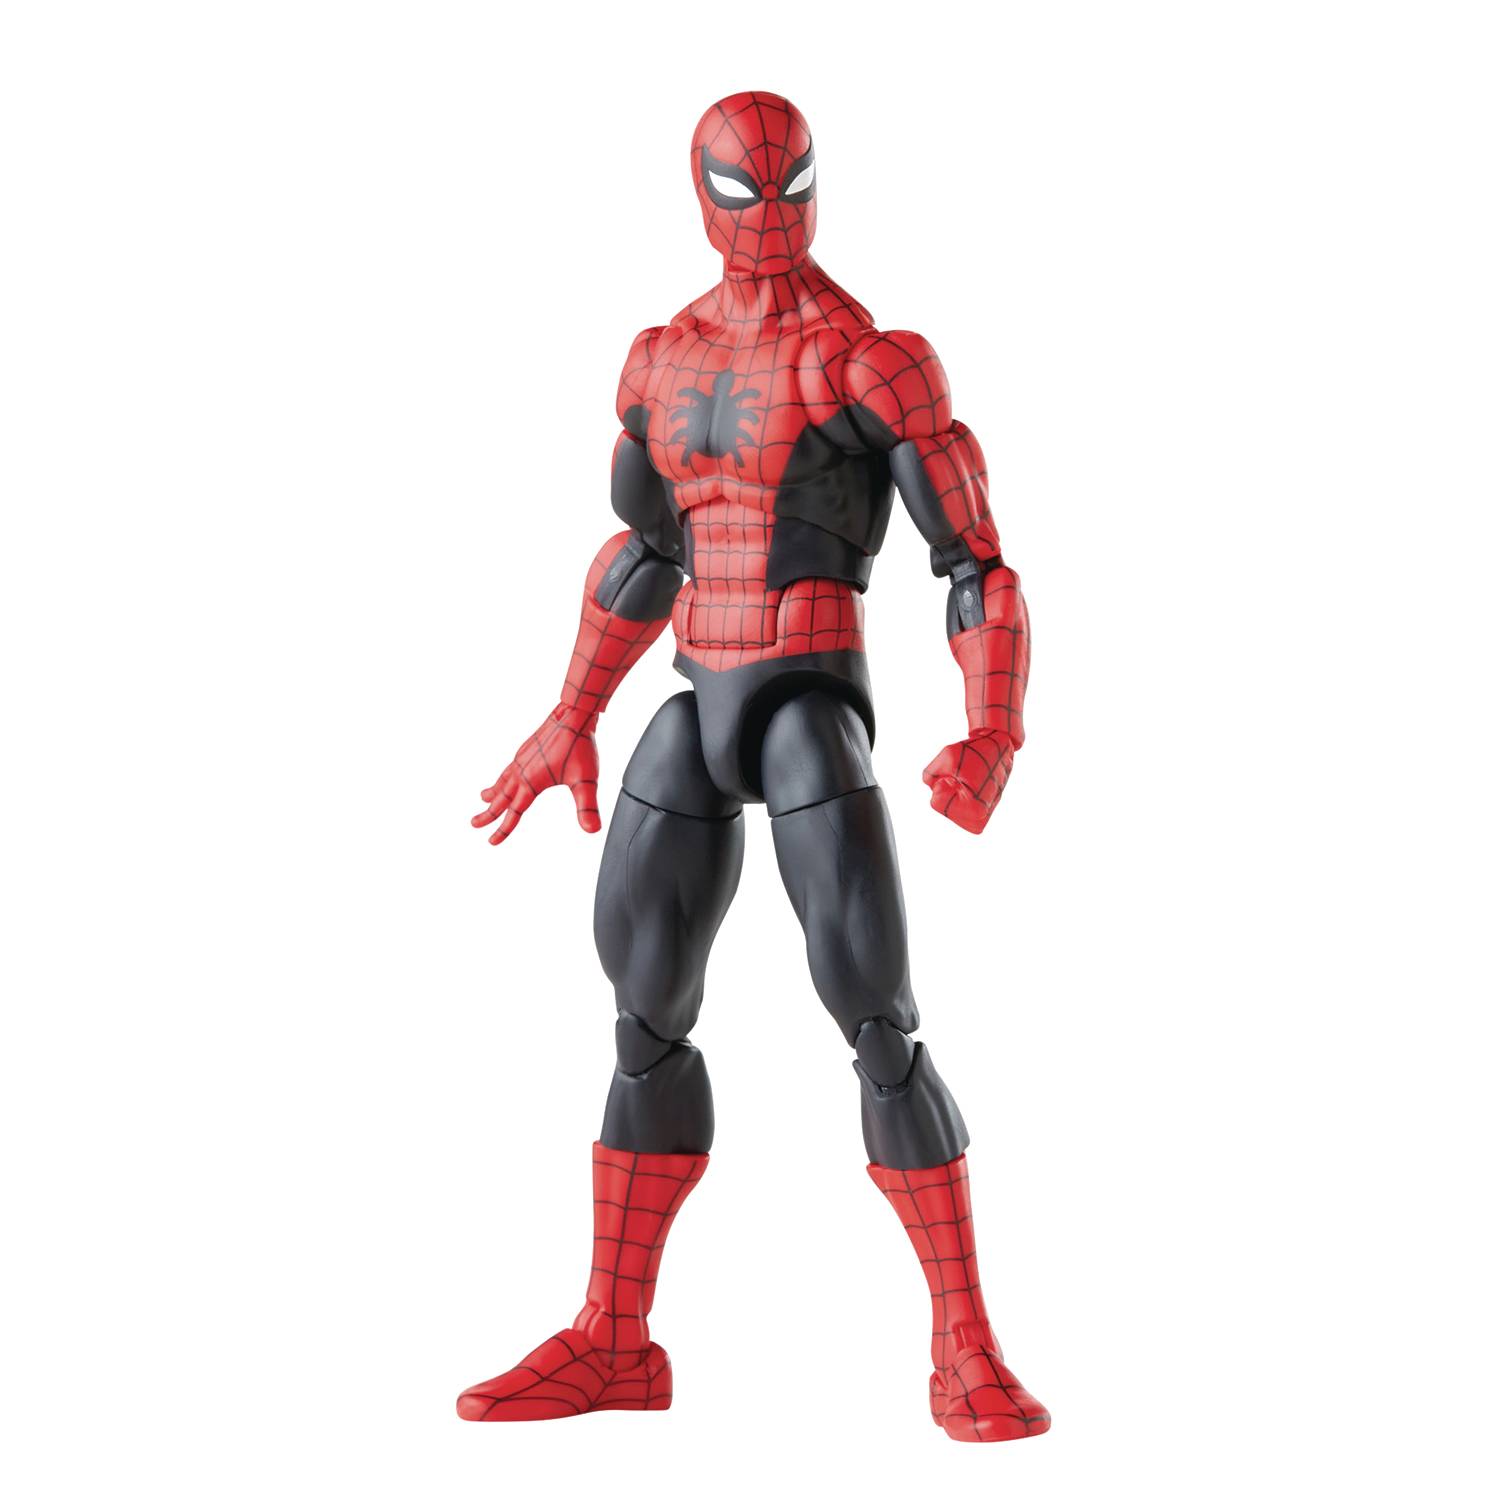 Achetez Figurine Ml Amazing Fantasy SPIDER-MAN Af